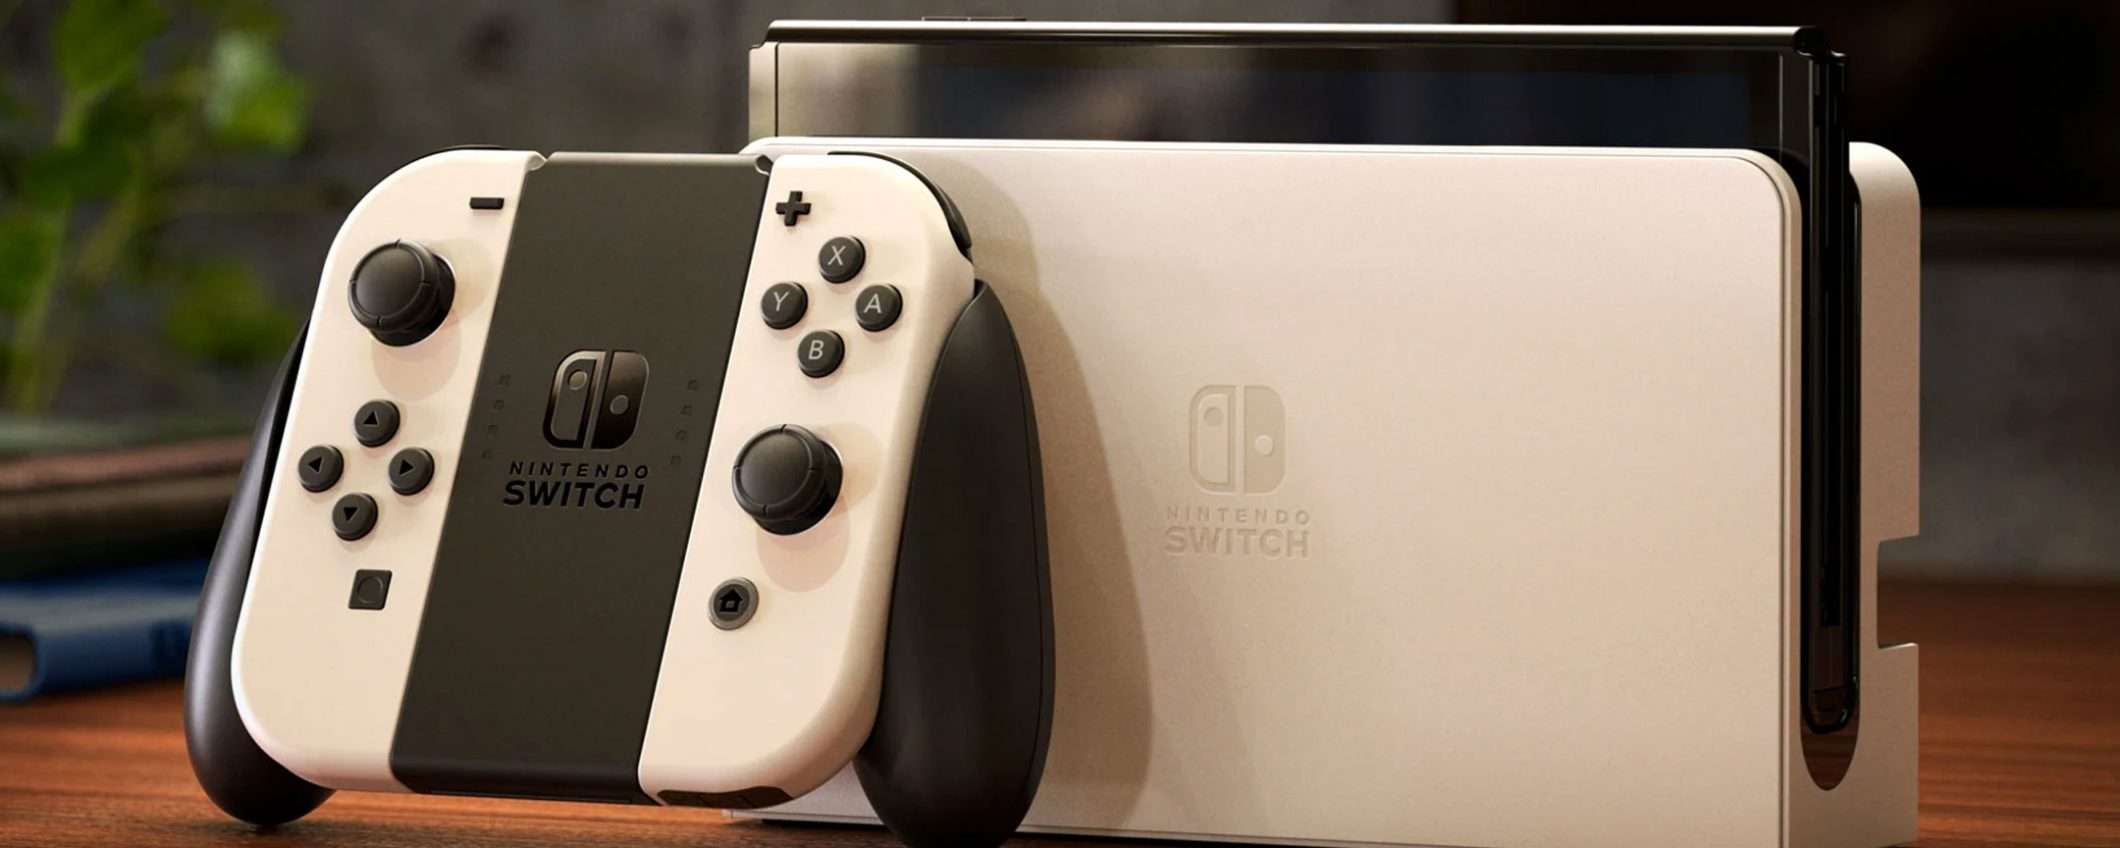 Torna in prenotazione la Nintendo Switch OLED, ma le scorte sono limitate